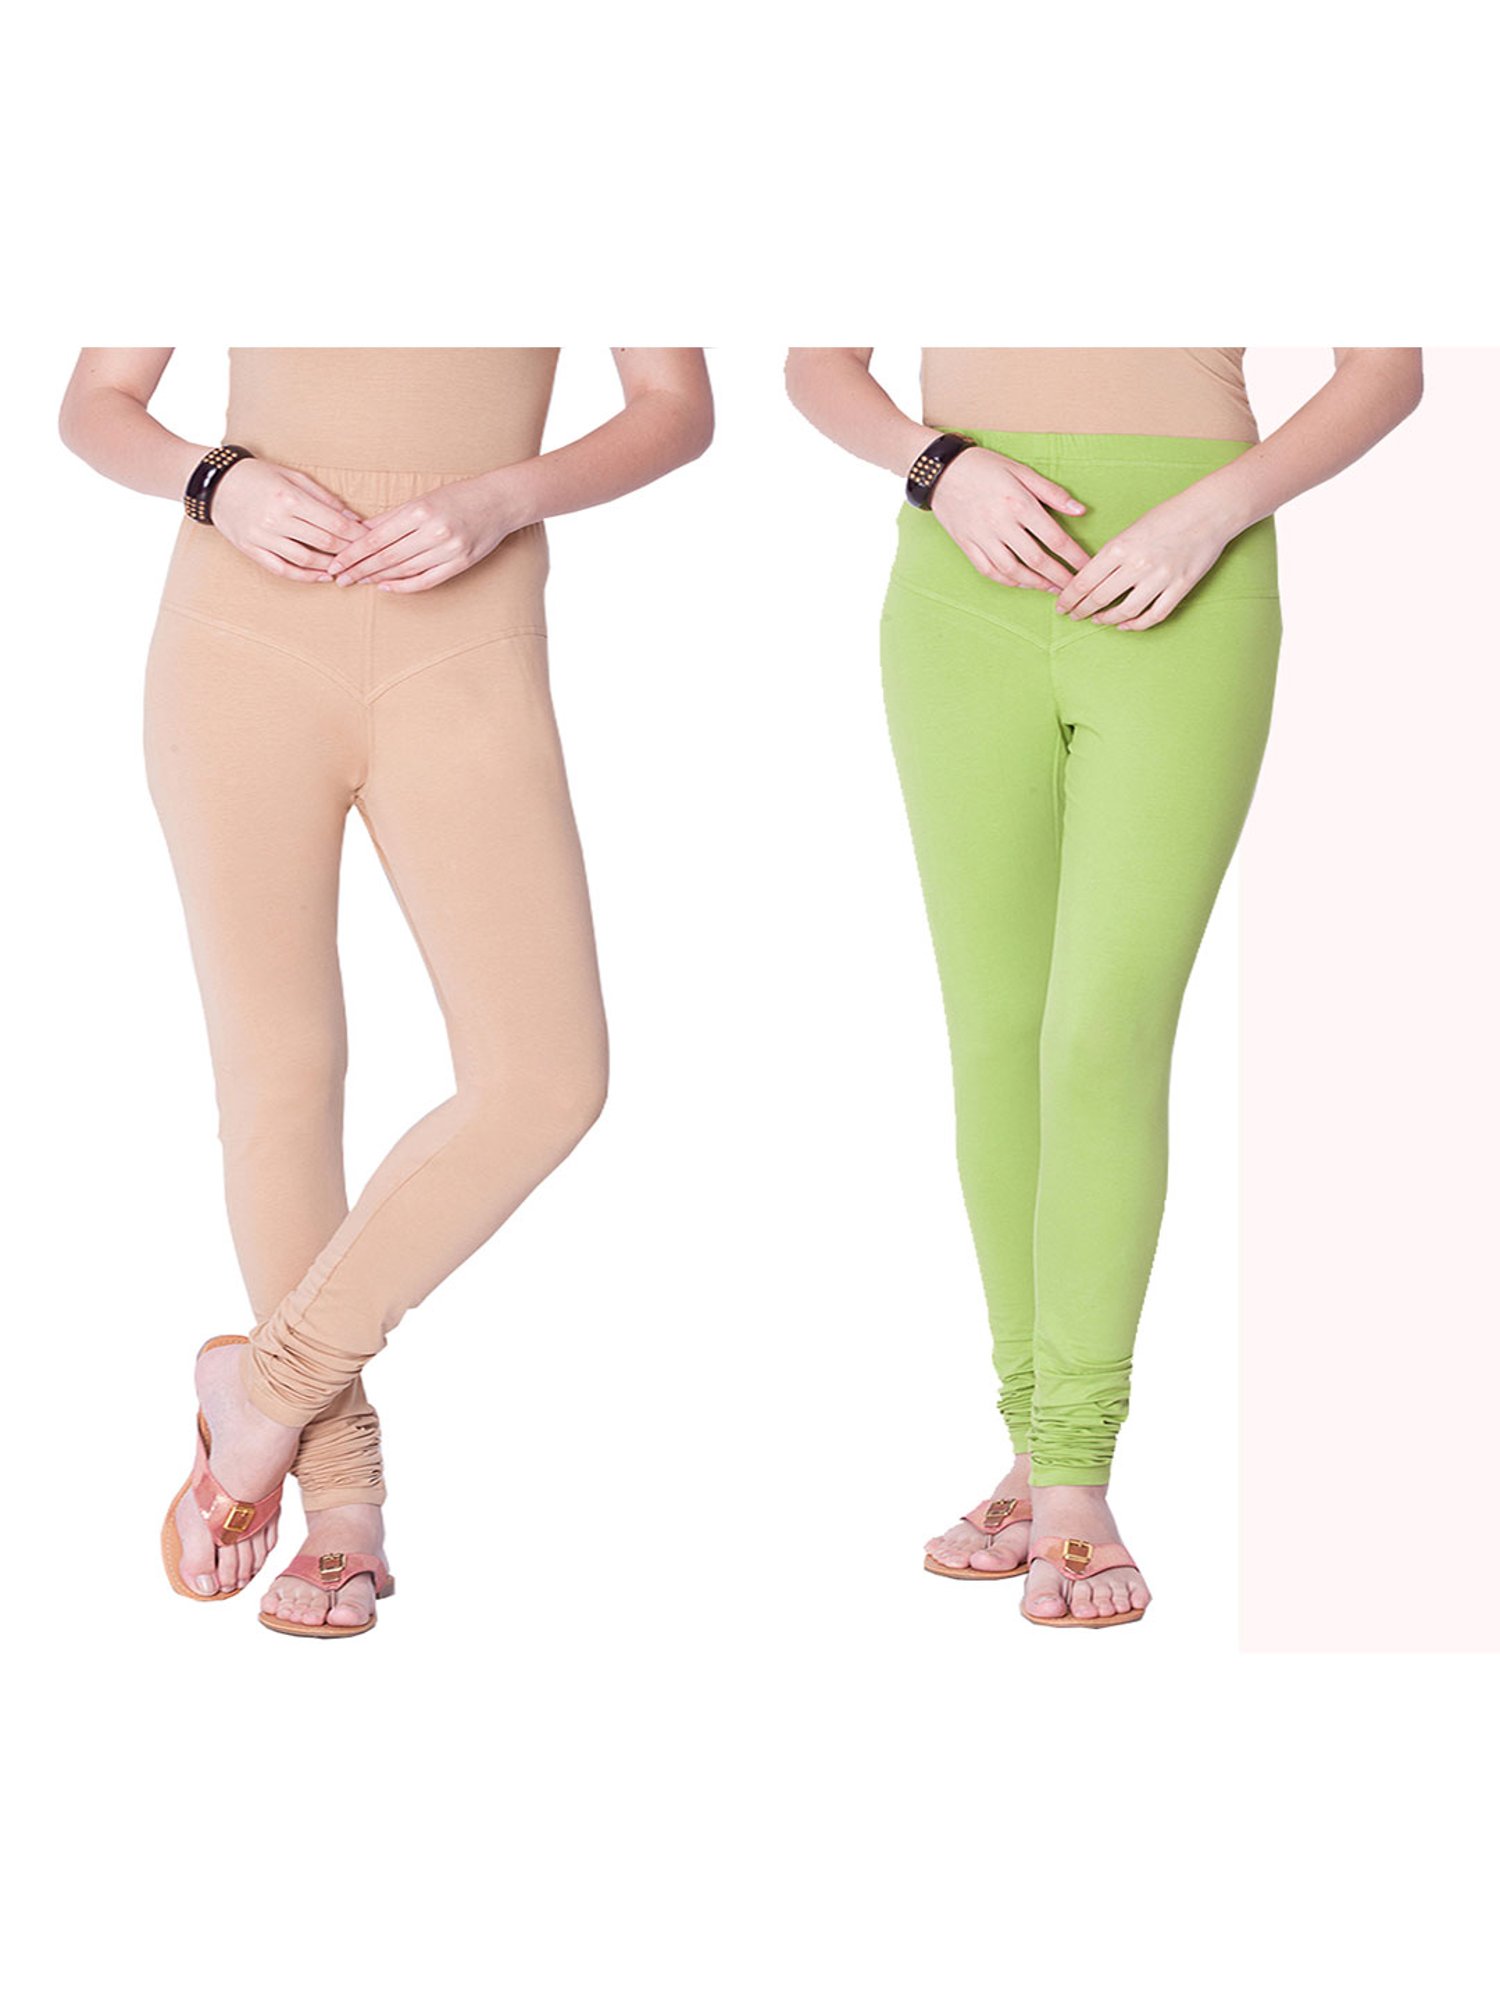 Buy Dollar Missy Parrot Green Cotton Leggings for Women Online @ Tata CLiQ